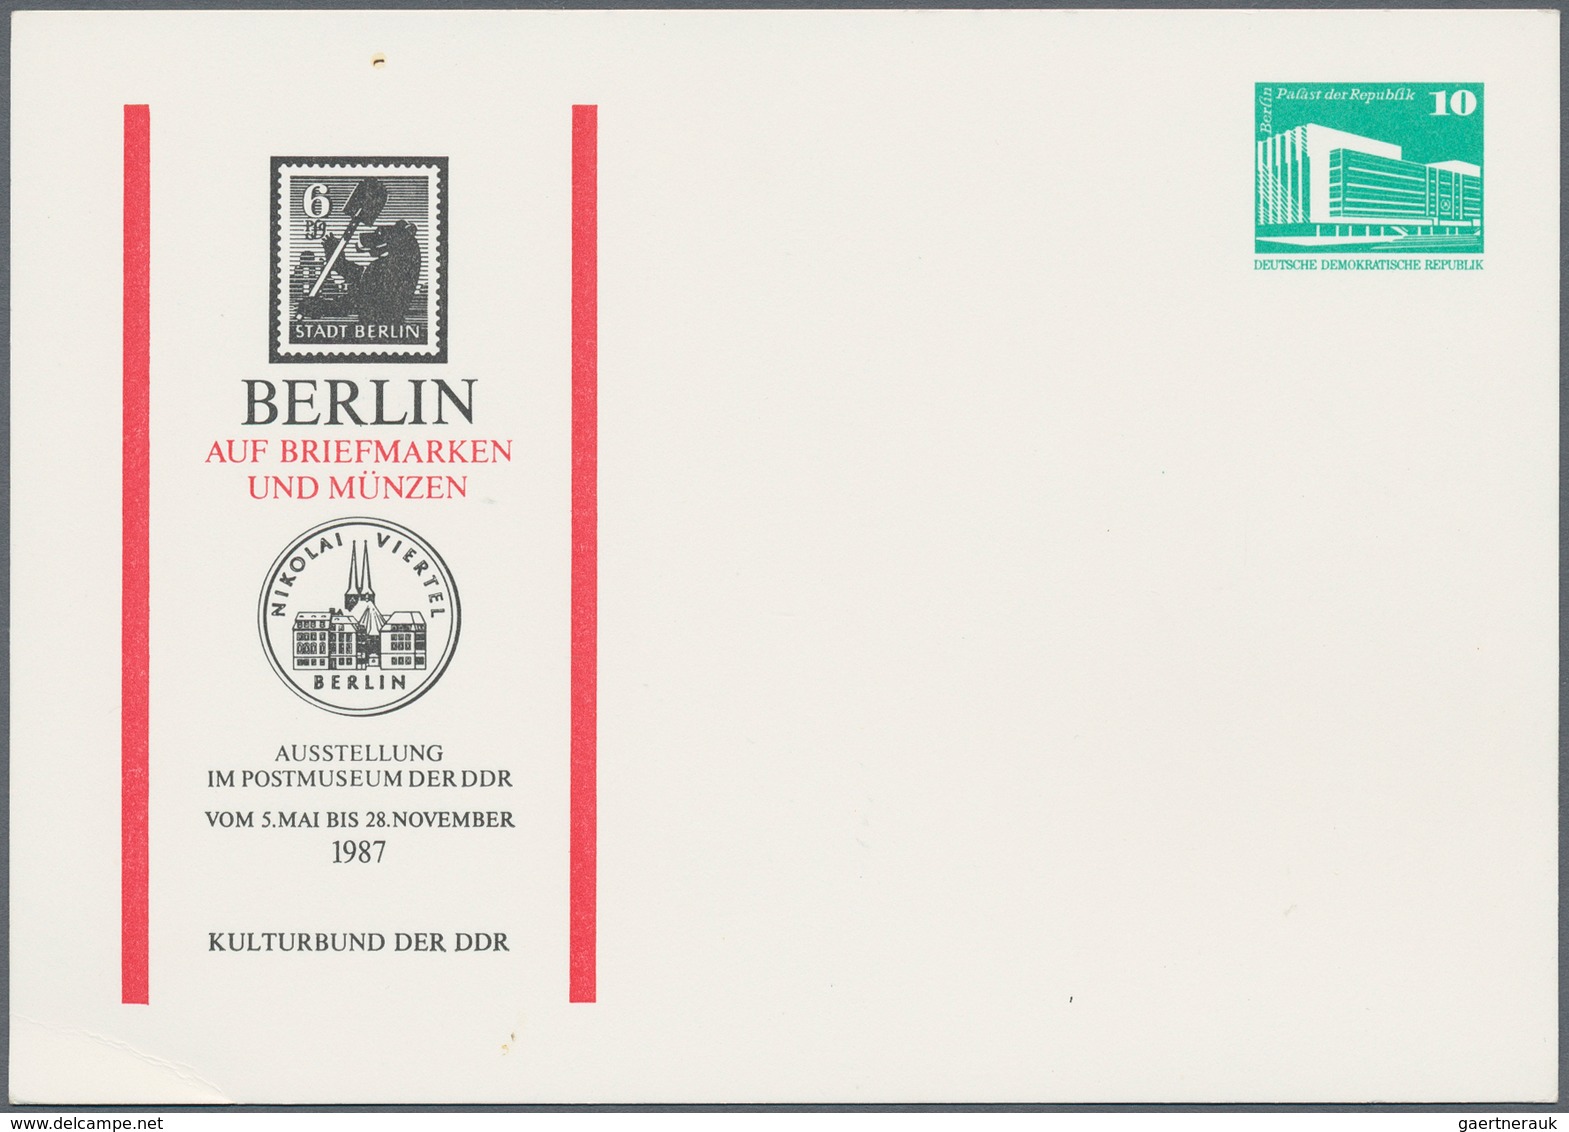 DDR: 1955/1990, Partie von ca. 150 Briefen, Karten und Ganzsachen, dabei Privat-GA, interessante Ver